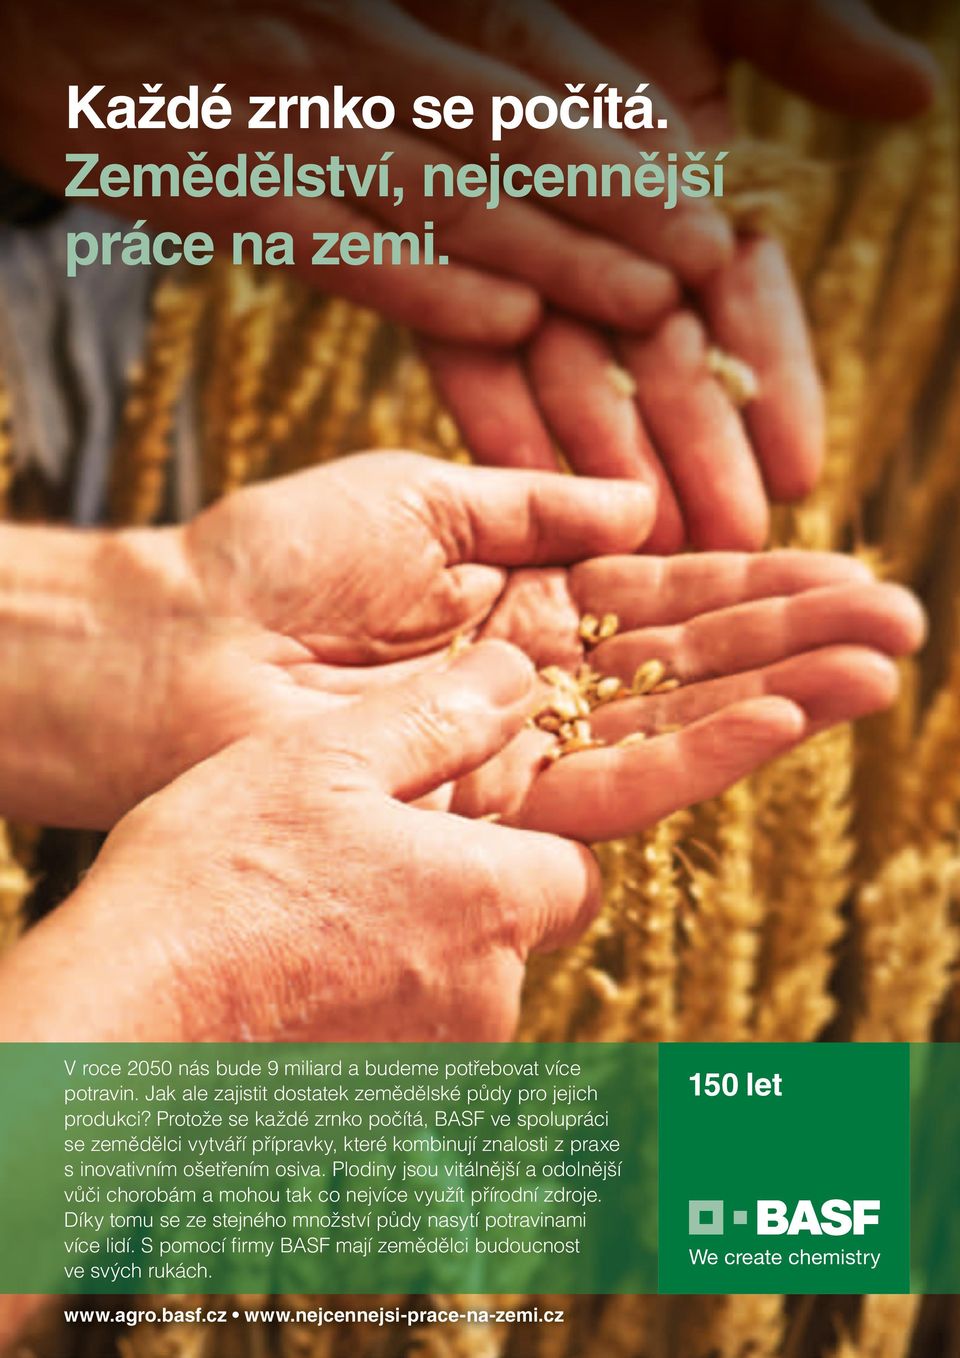 Protože se každé zrnko počítá, BASF ve spolupráci se zemědělci vytváří přípravky, které kombinují znalosti z praxe s inovativním ošetřením osiva.